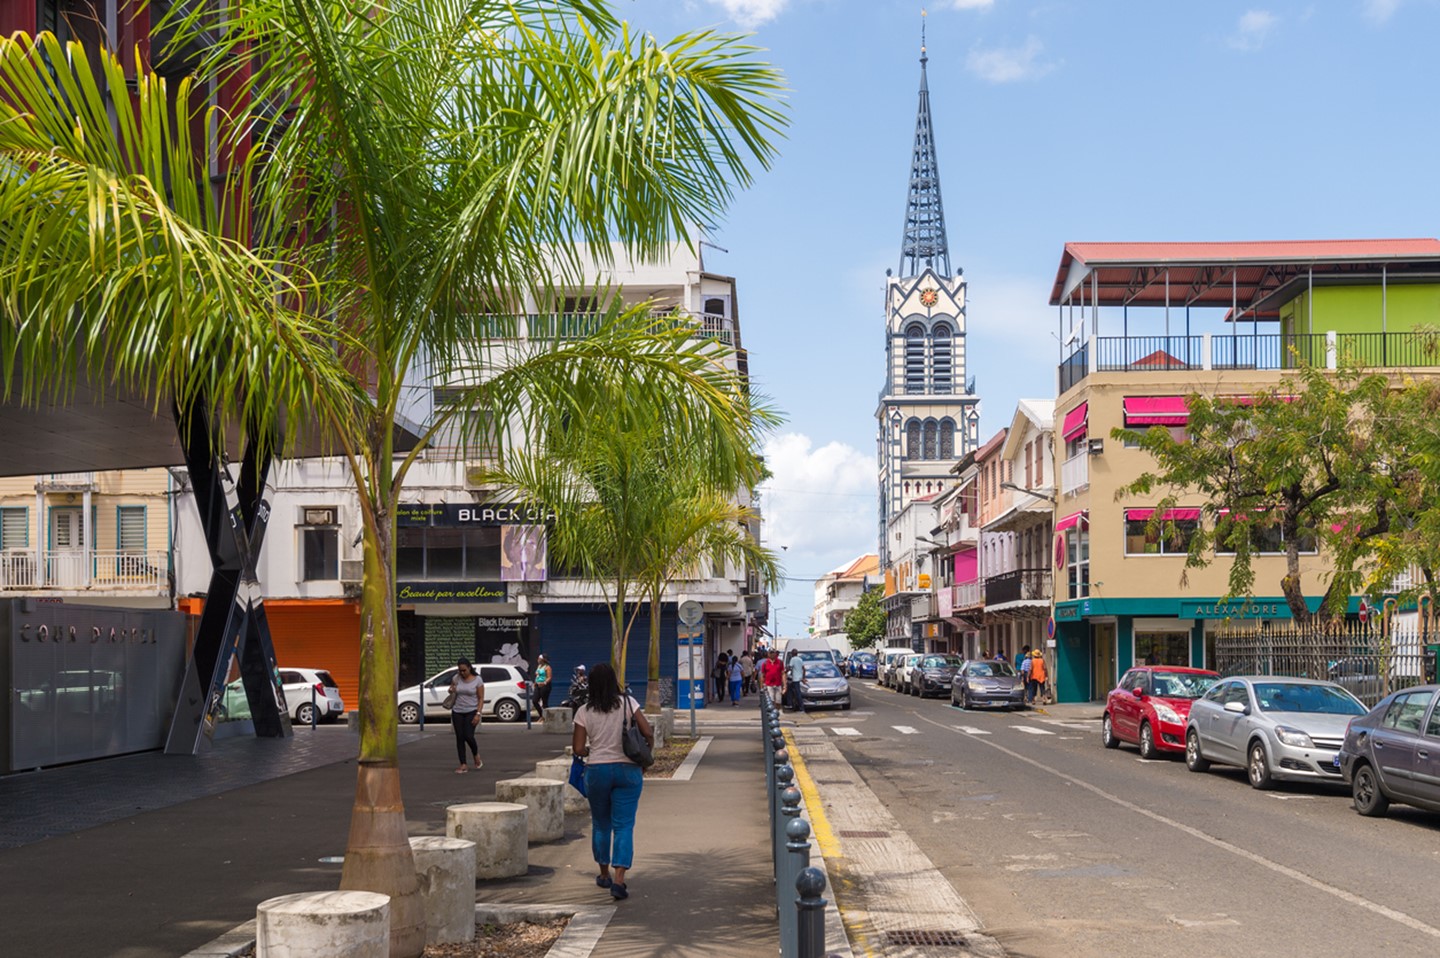 Réglementation location véhicule : tout savoir avant de louer une voiture en Martinique